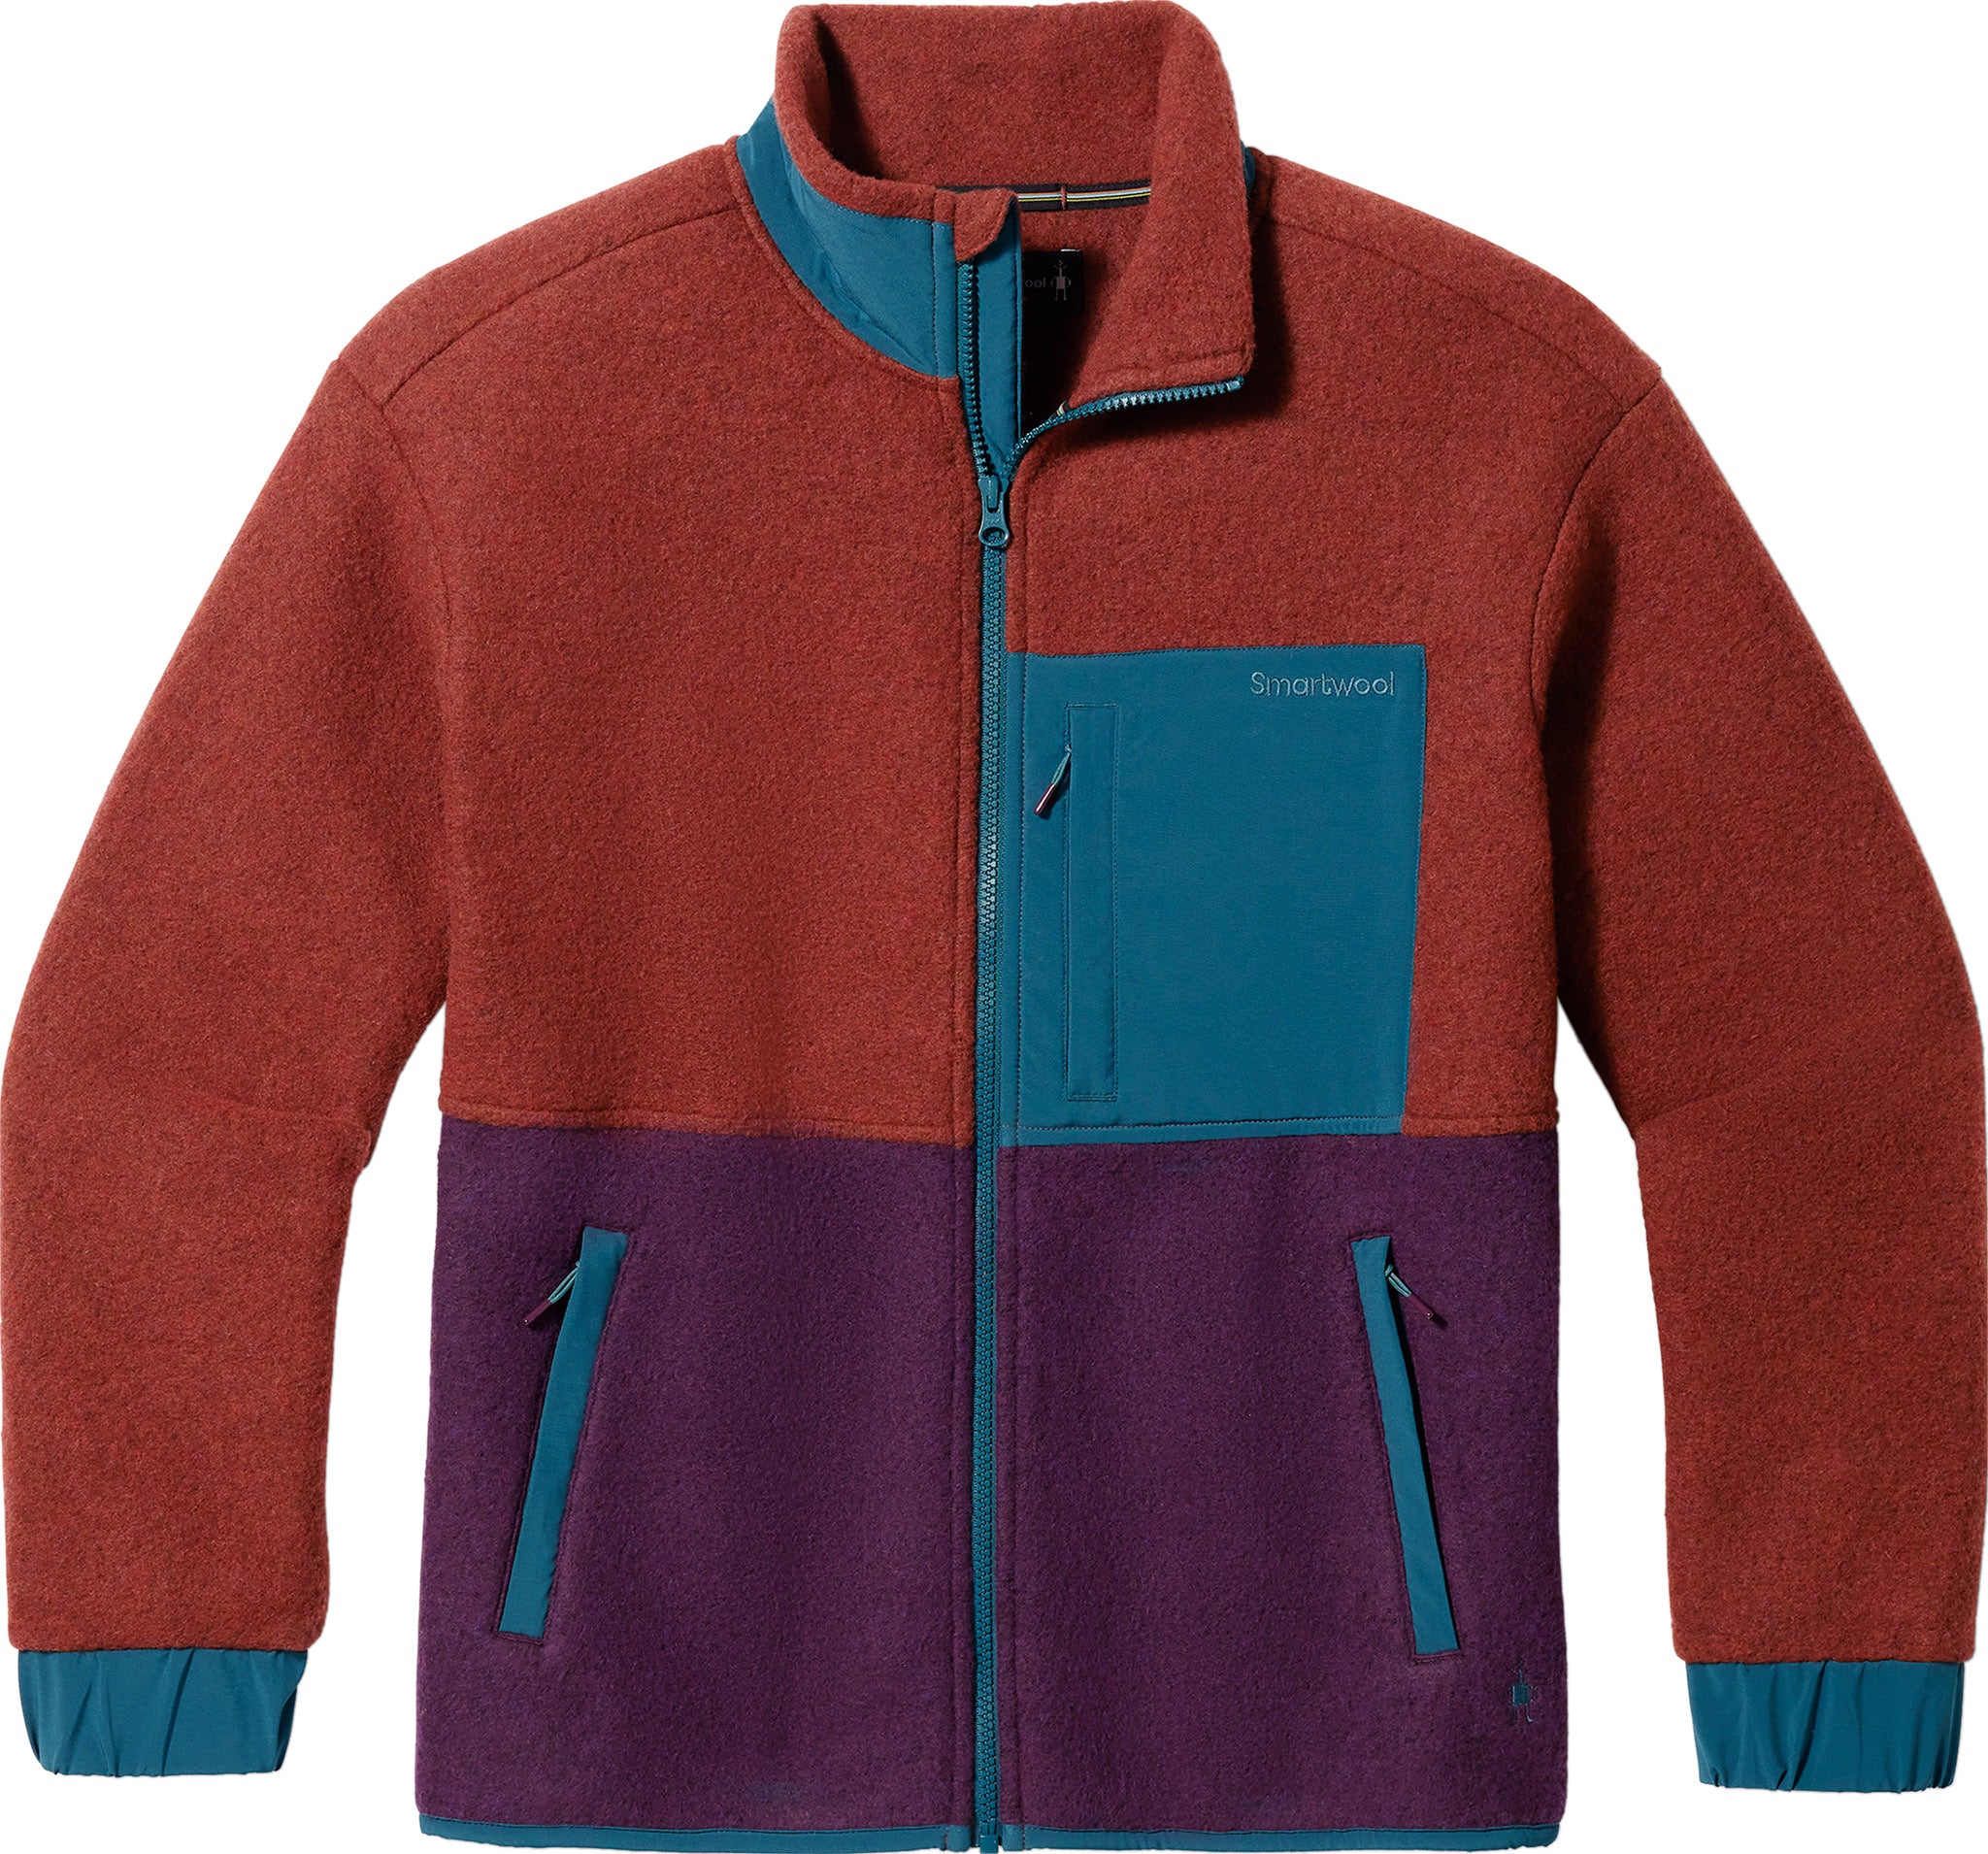 Smartwool - Hudson Trail Pullover Fleece Sweater - Women's